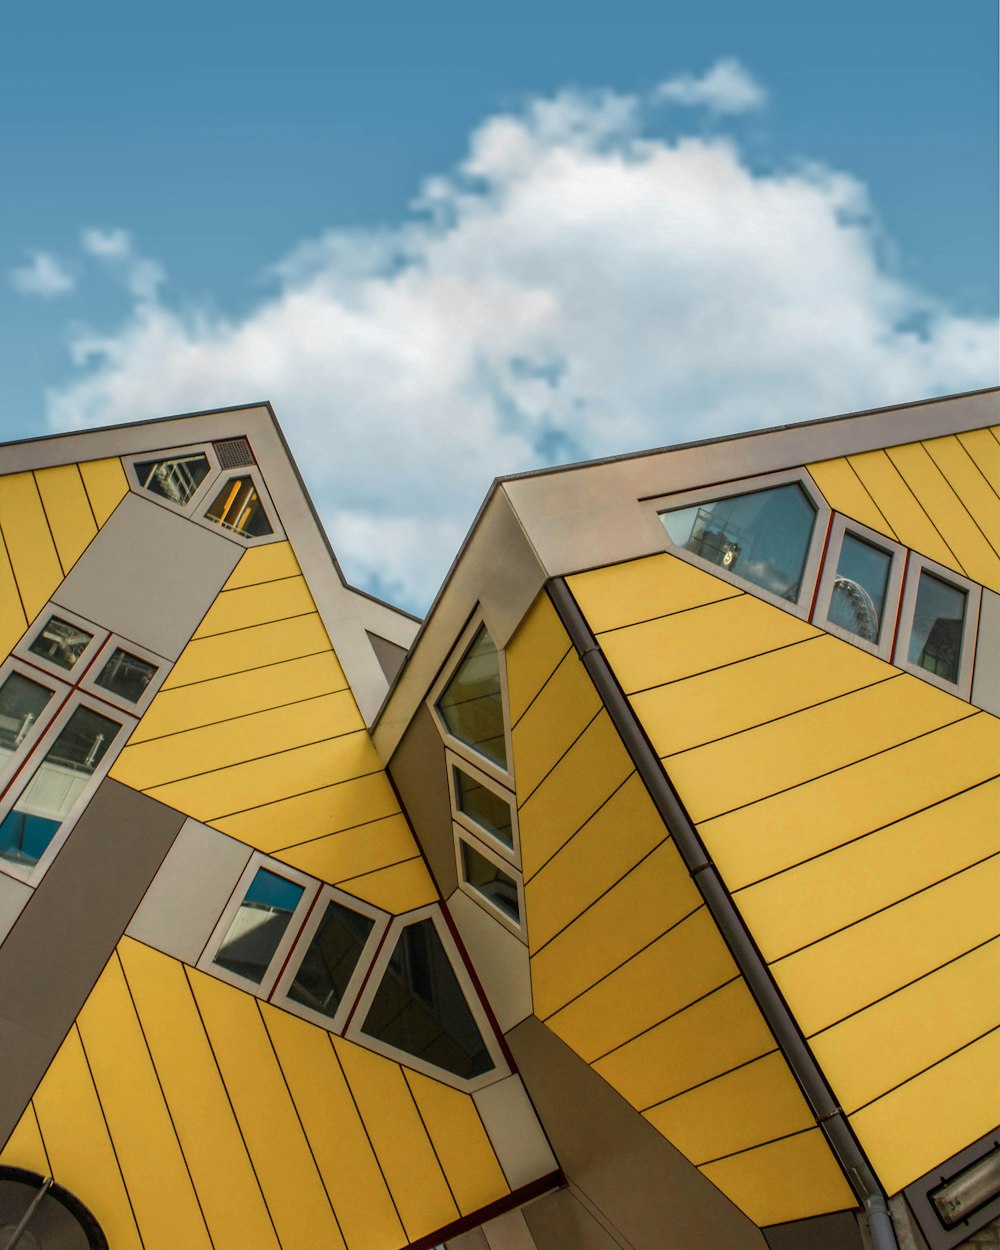 Architekturfotografie des gelben und grauen Hausdaches